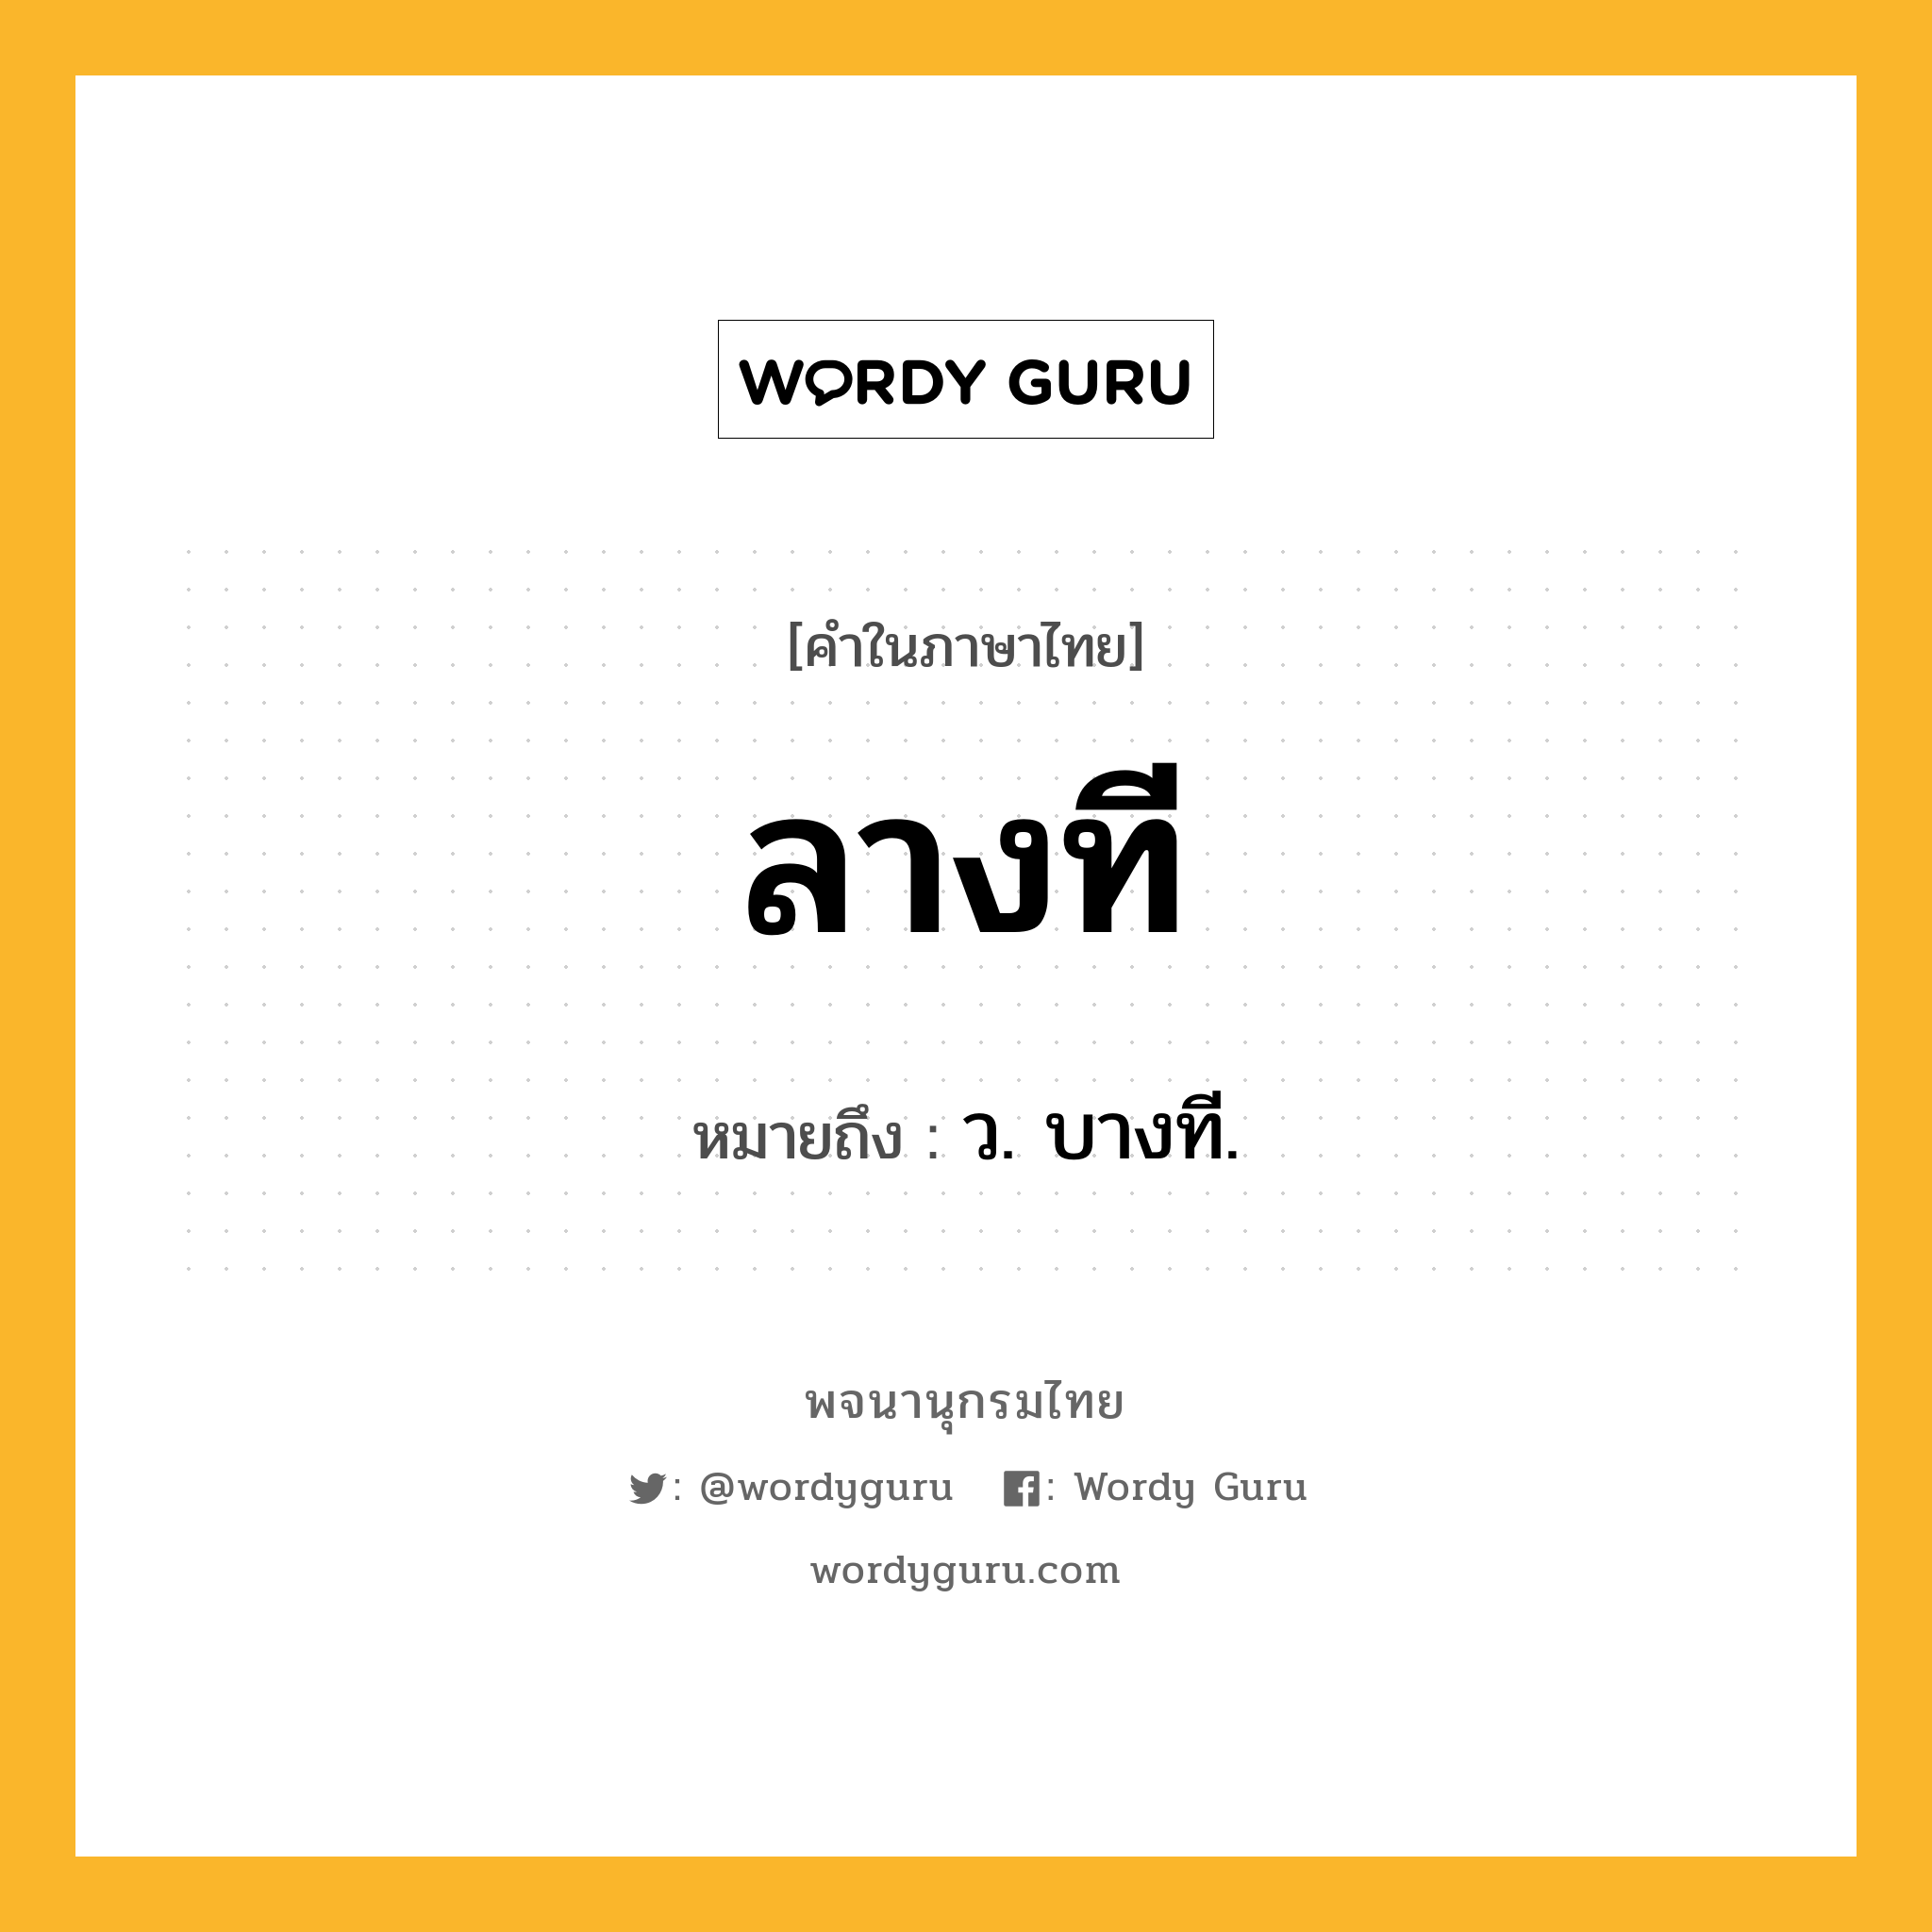 ลางที หมายถึงอะไร?, คำในภาษาไทย ลางที หมายถึง ว. บางที.